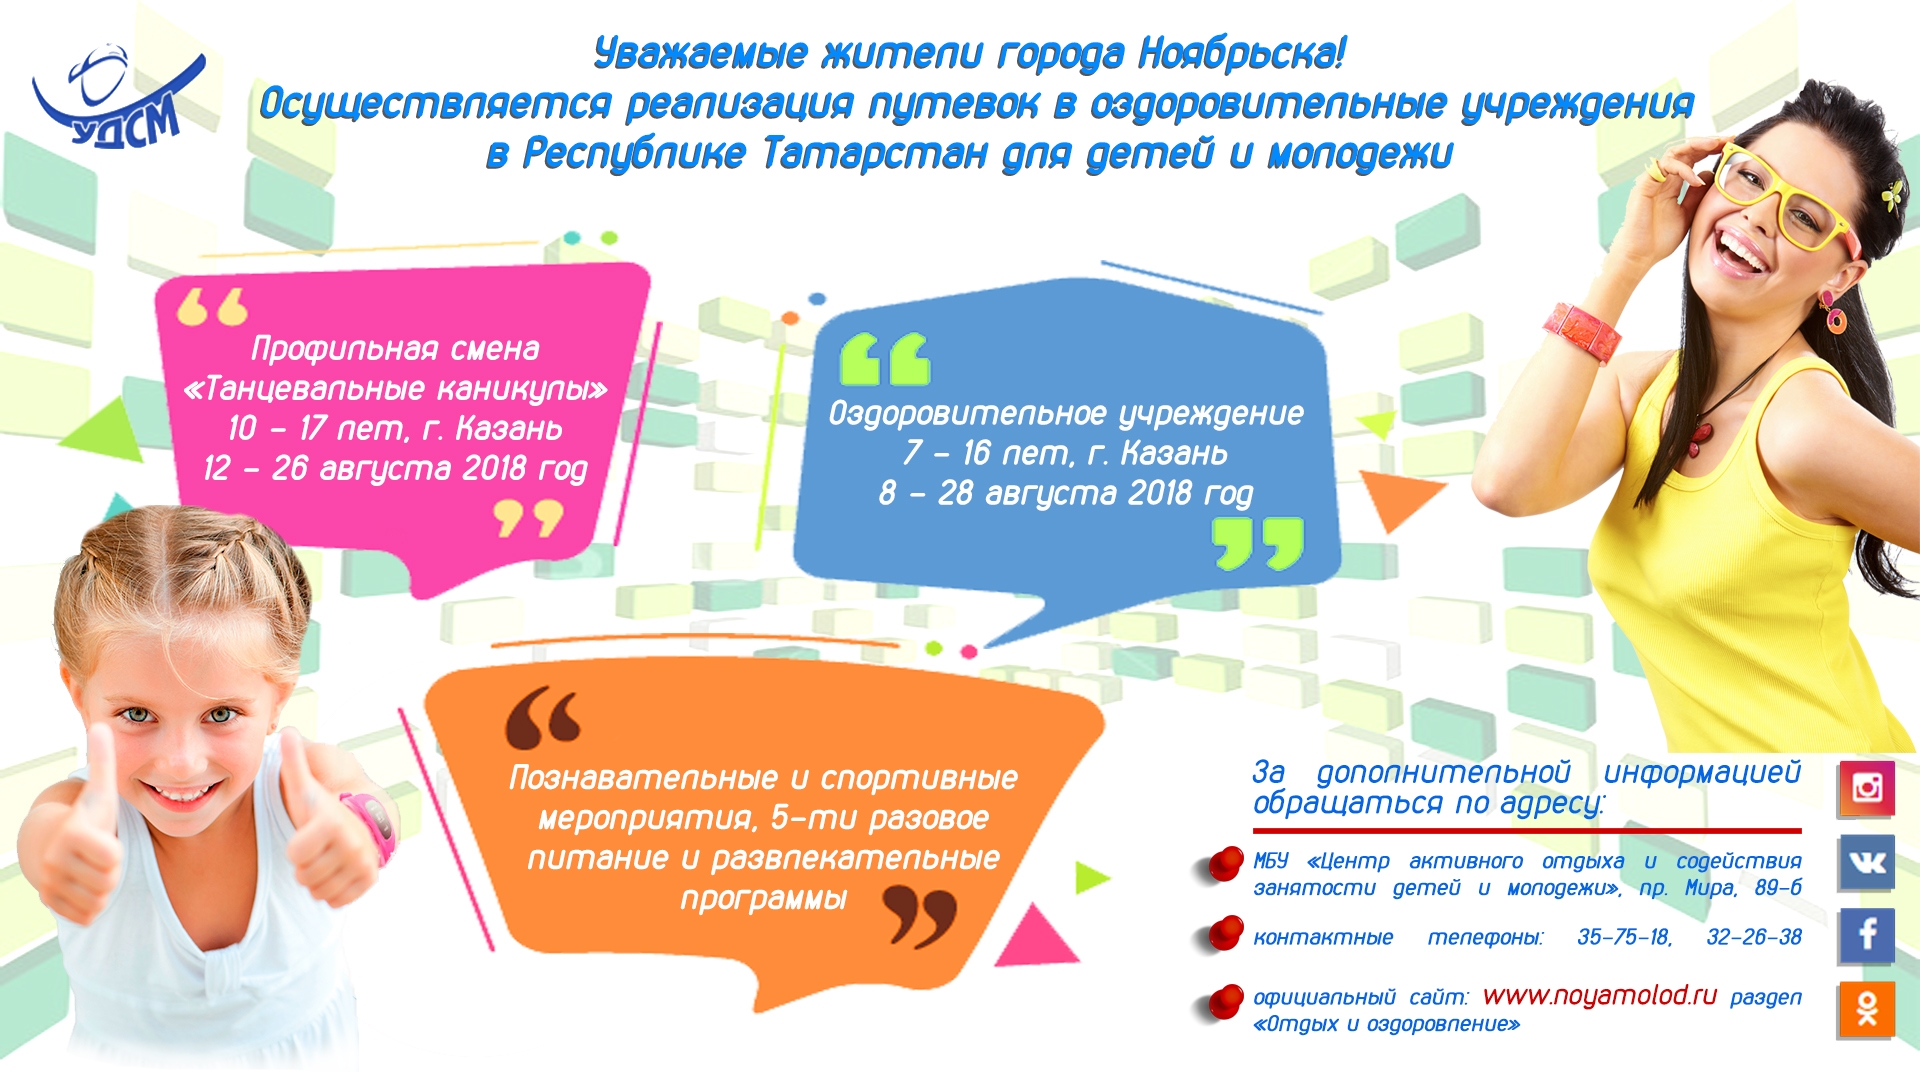 Приглашаем на отдых в оздоровительном учреждении  республики Татарстан  для детей в возрасте от 7 до 16 лет